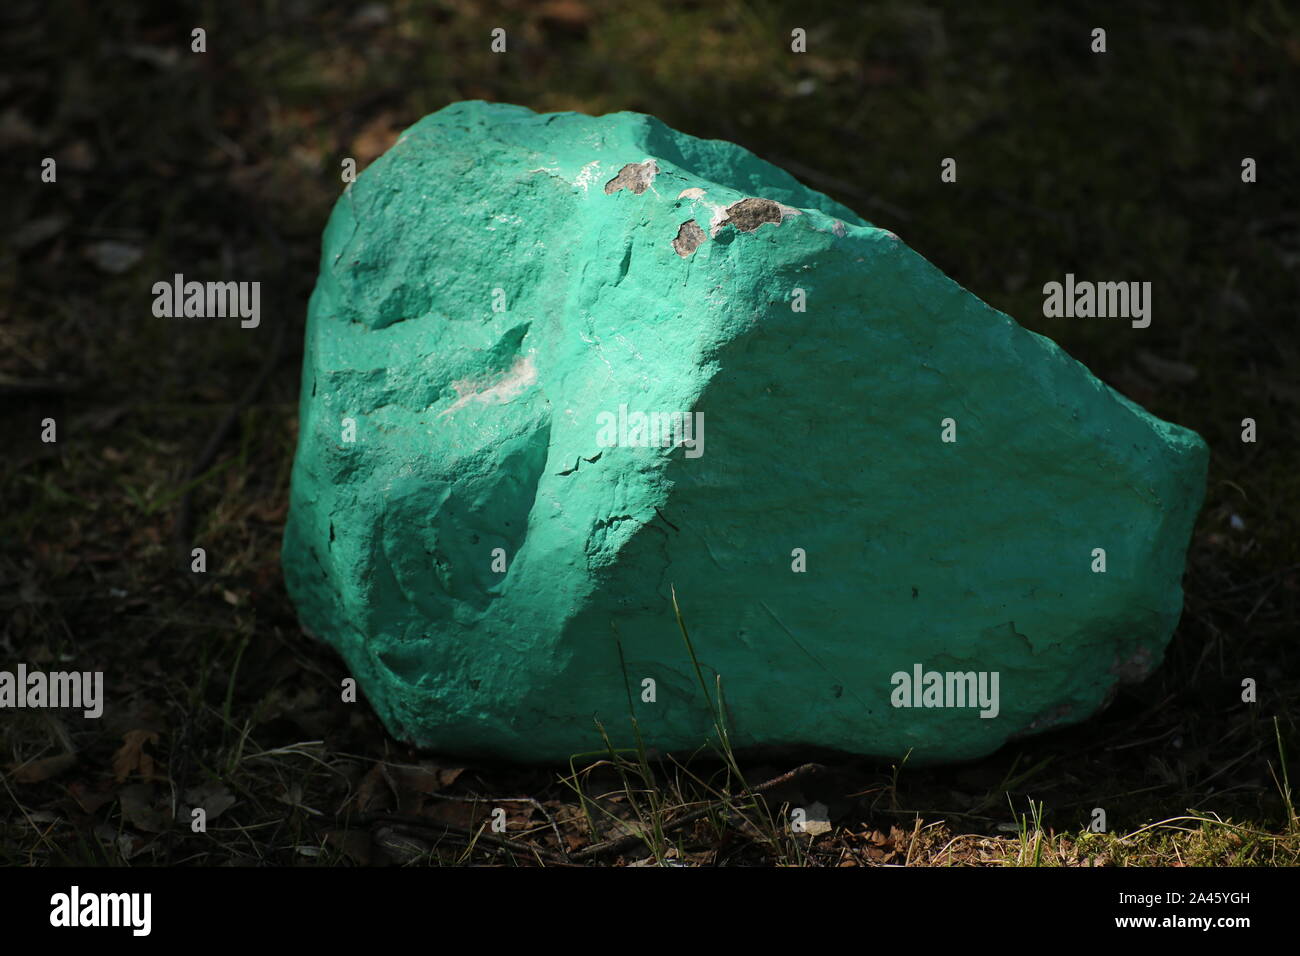 Tiré d'un conceptuel stone peint en turquoise. Banque D'Images